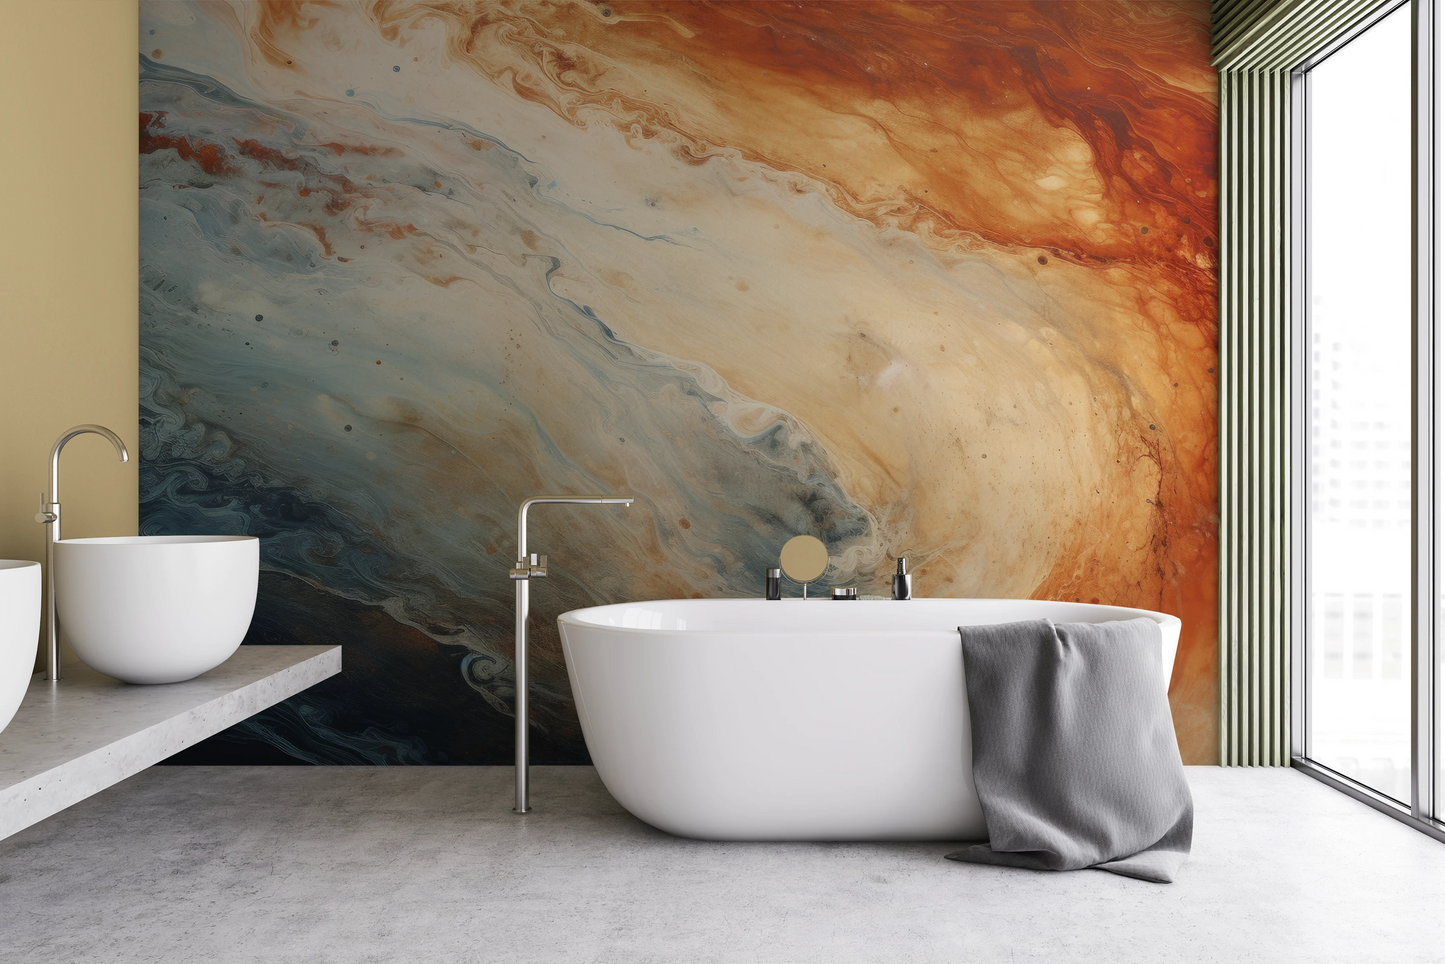 Fototapeta malowana o nazwie Jupiter's Storm #2 pokazana w aranżacji wnętrza.